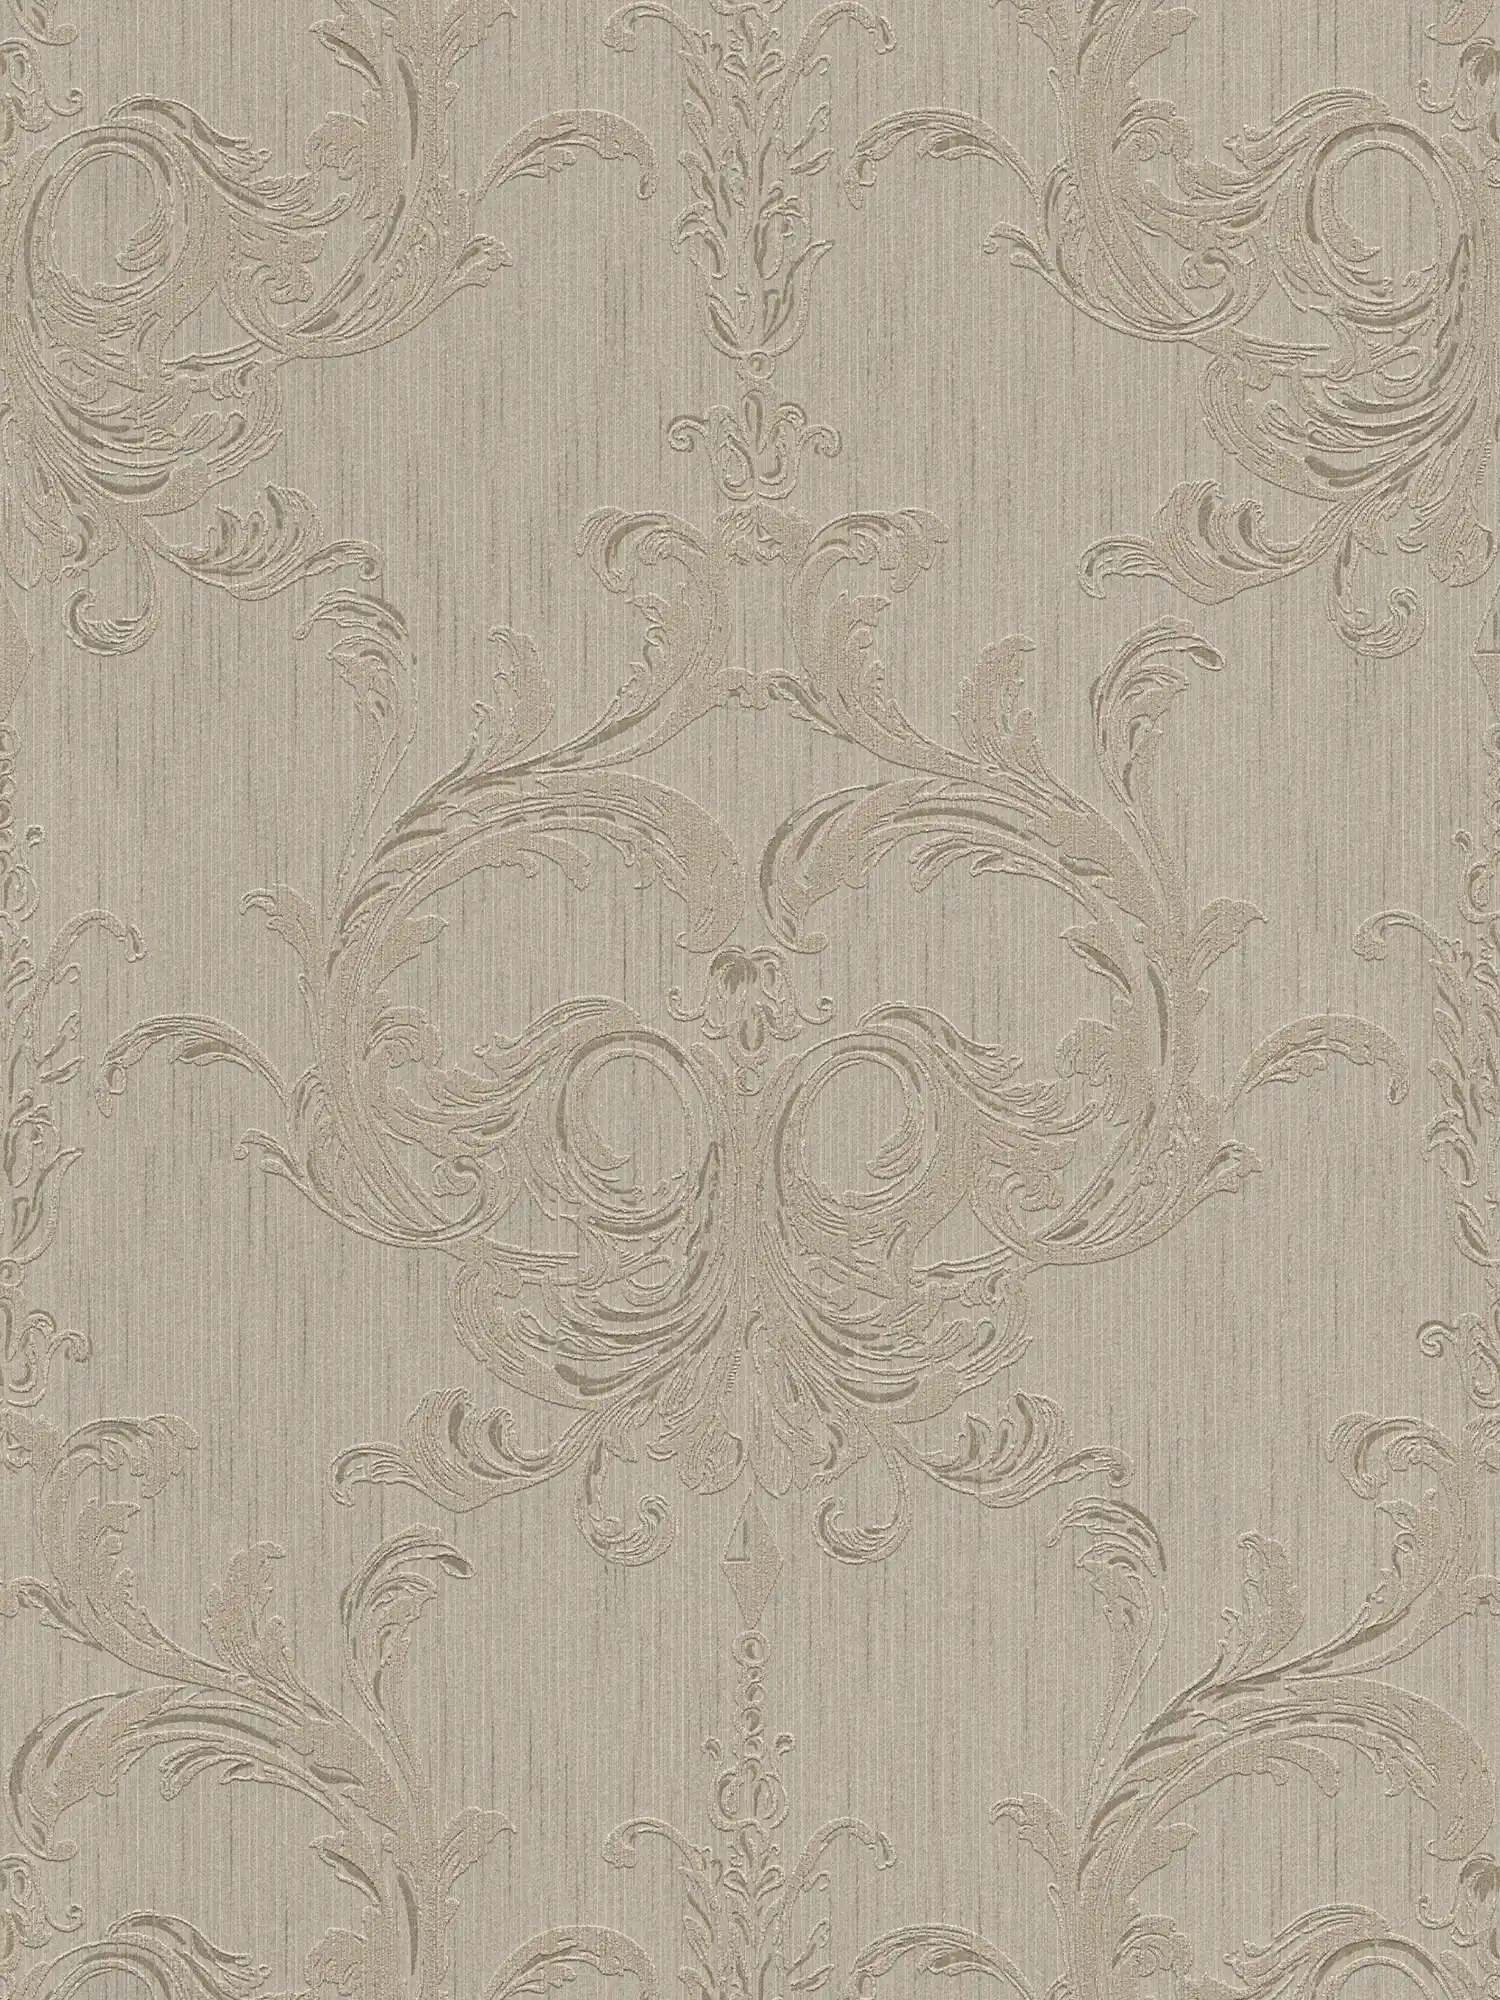 Elegant behangpapier met filigraan ornament ontwerp - bruin
